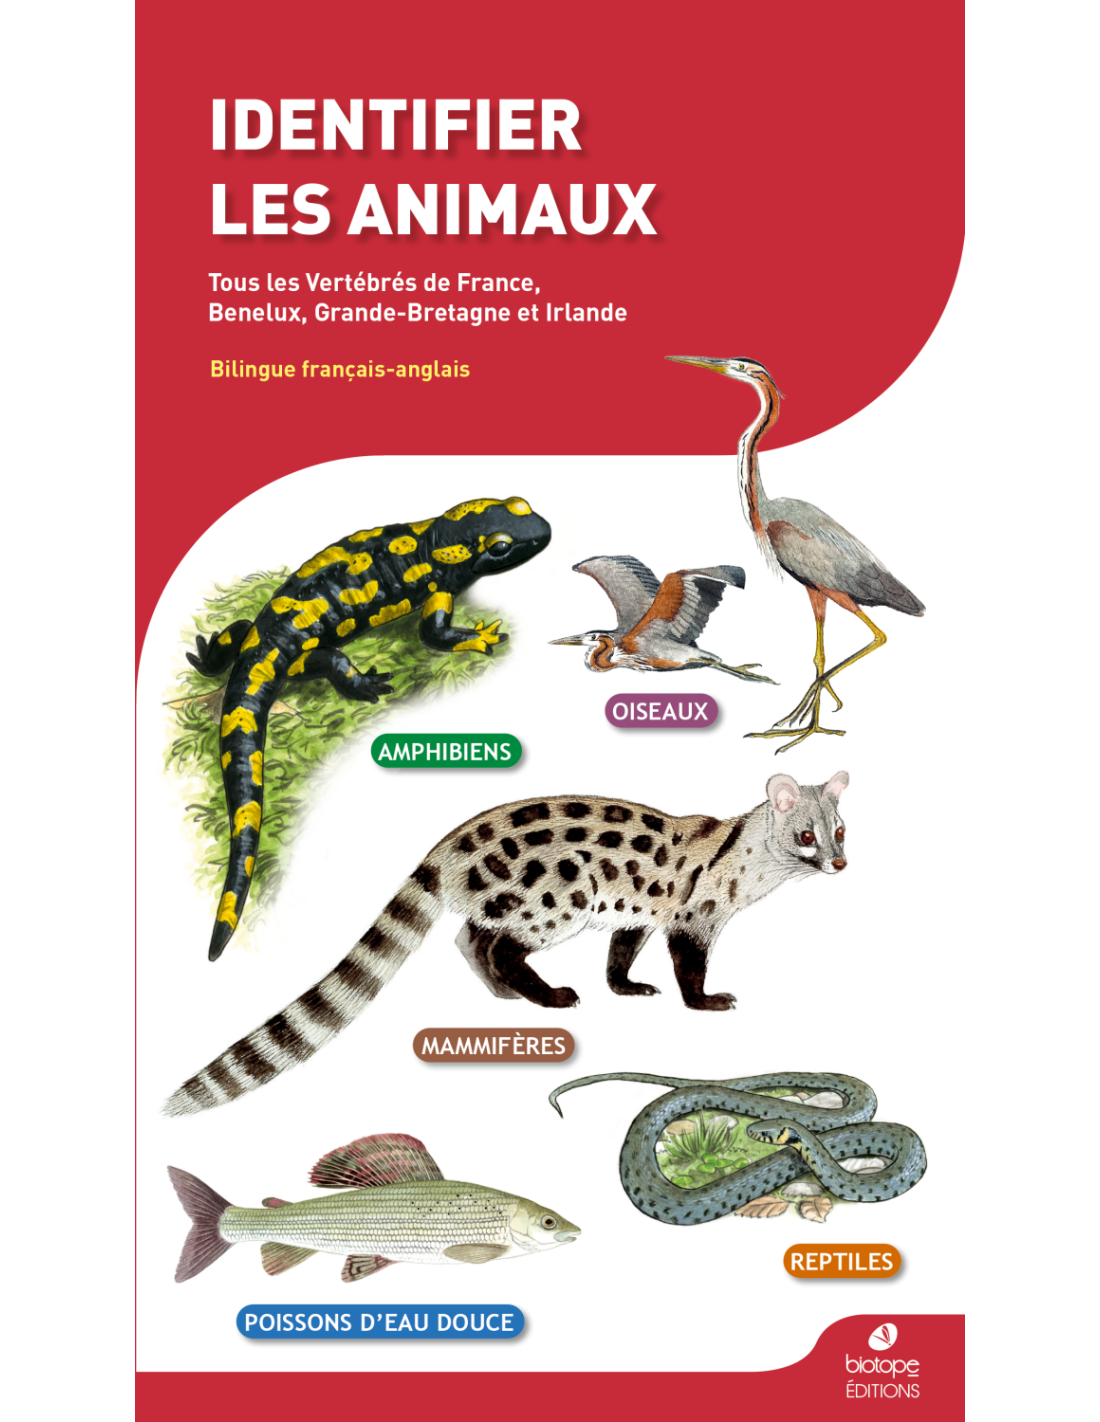 Les animaux des forêts françaises – Mille Lieux Nature